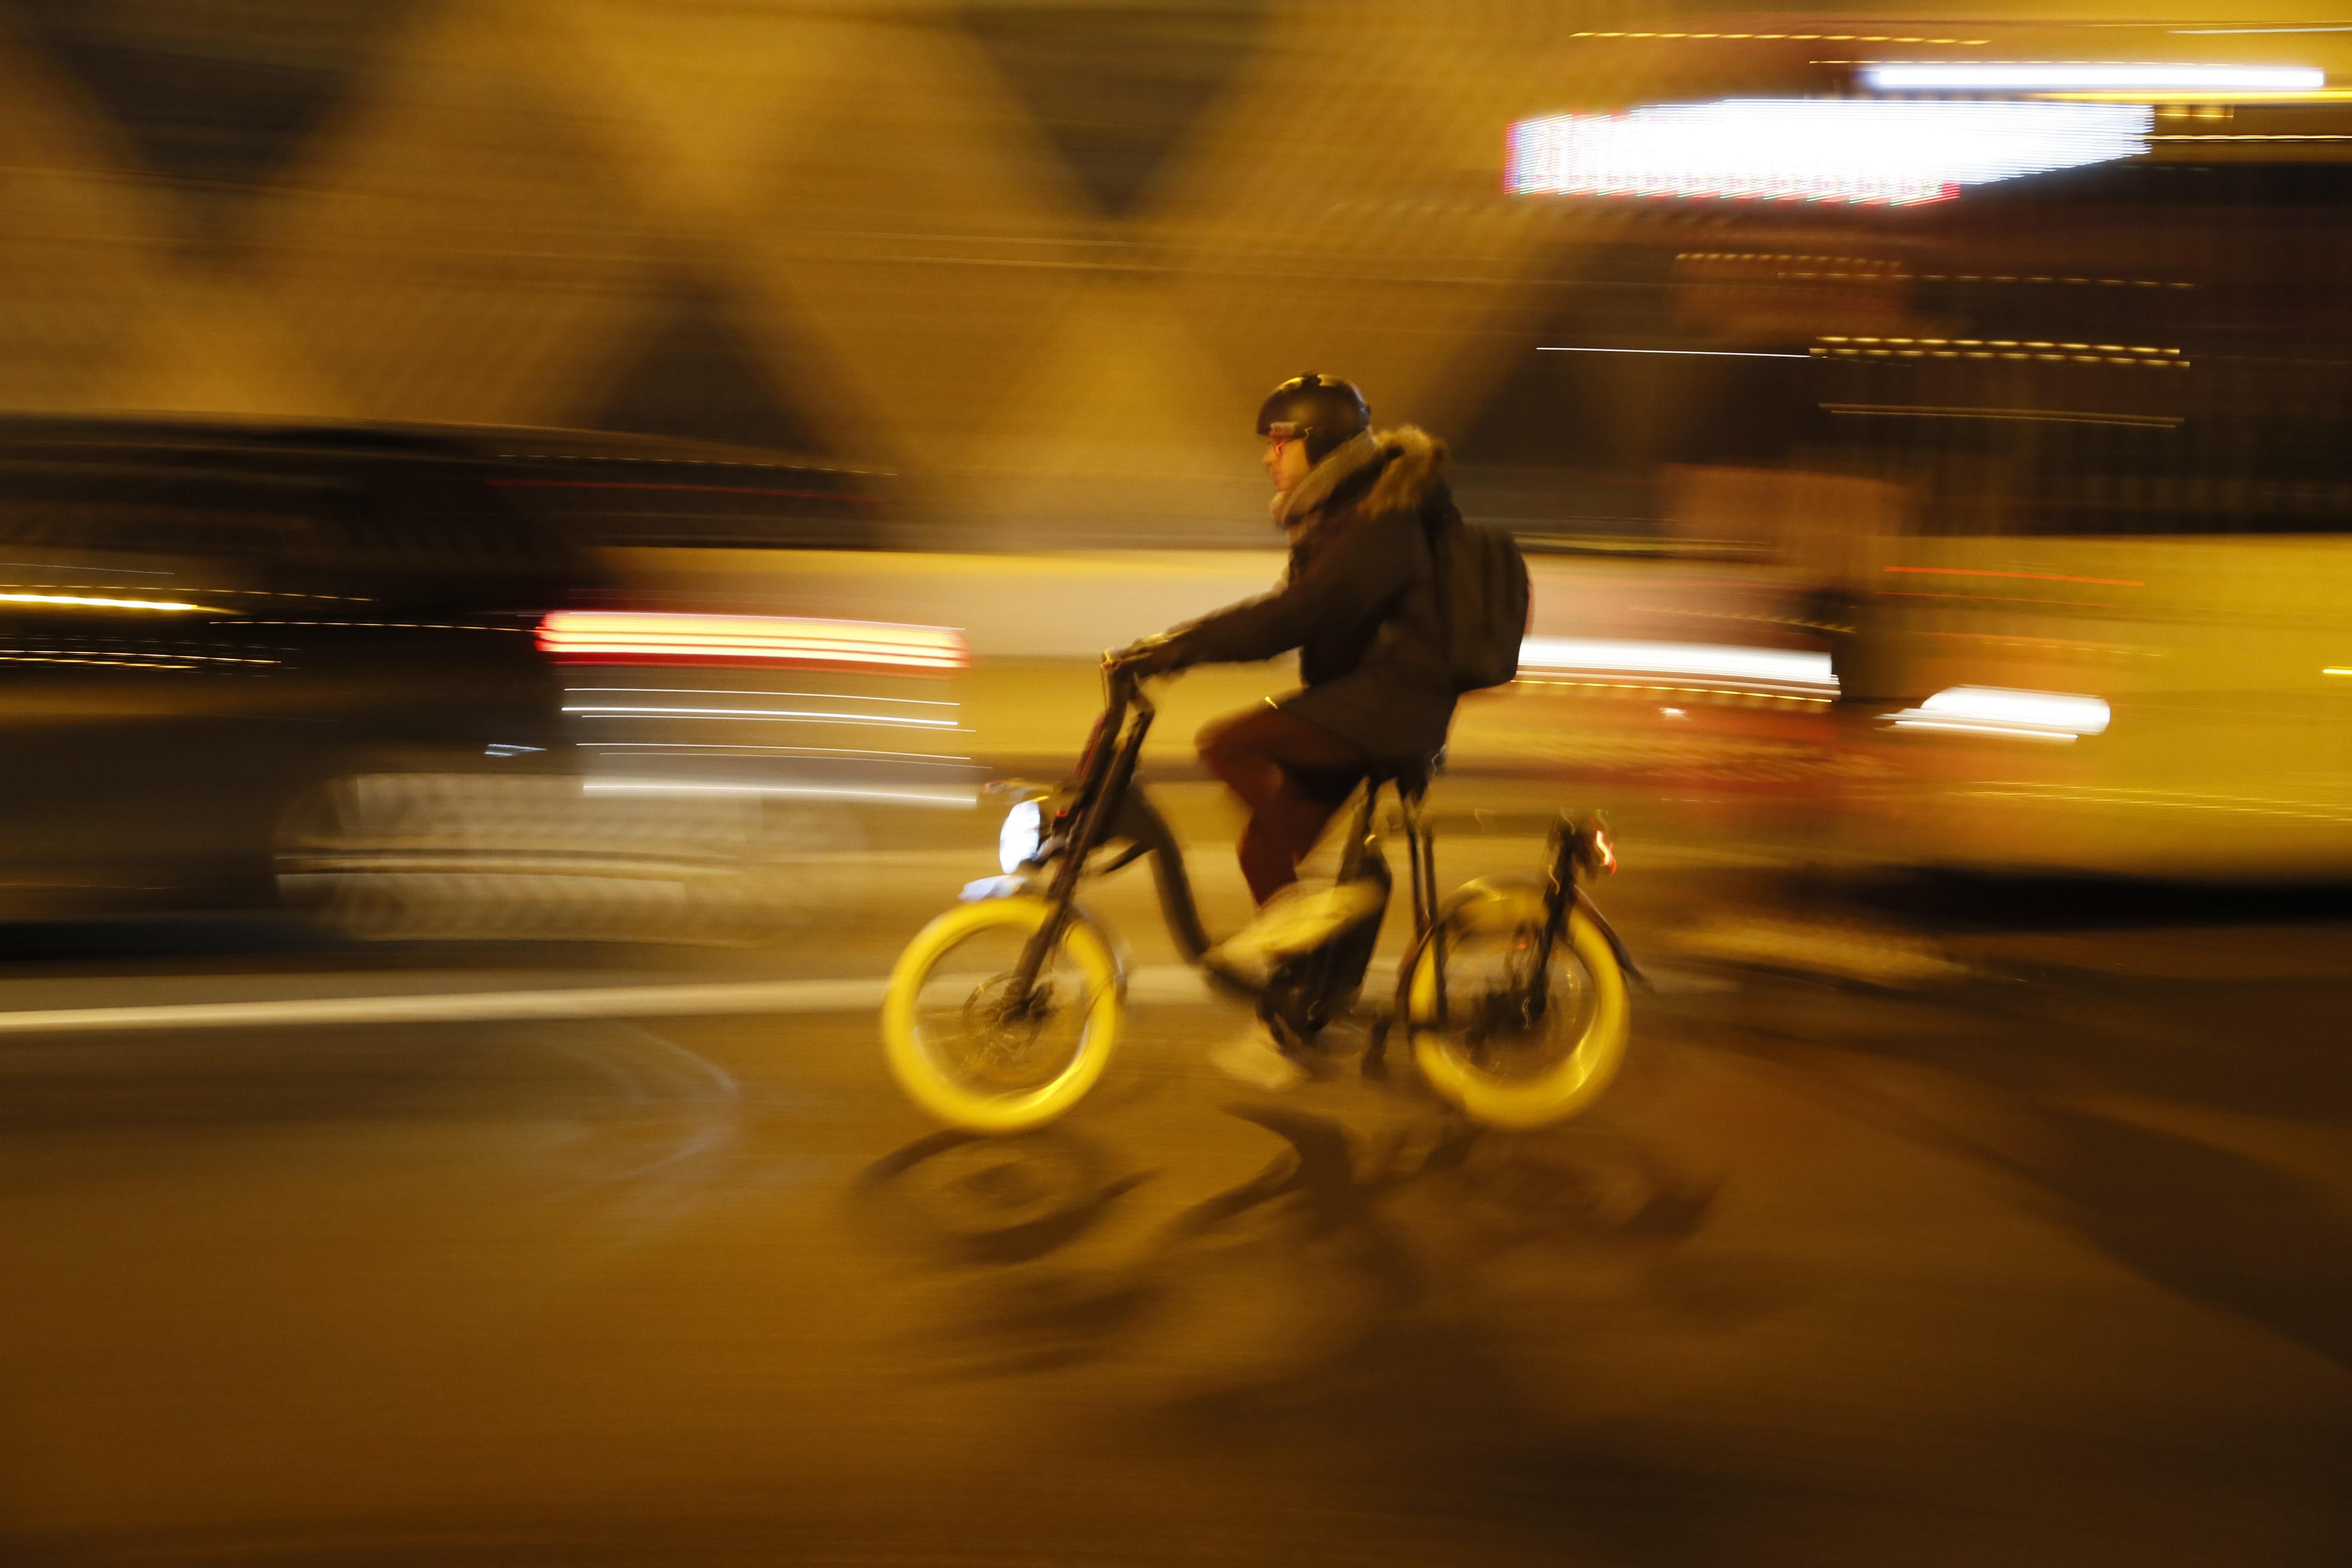 A man wearing a helmet rides a yellow bike.